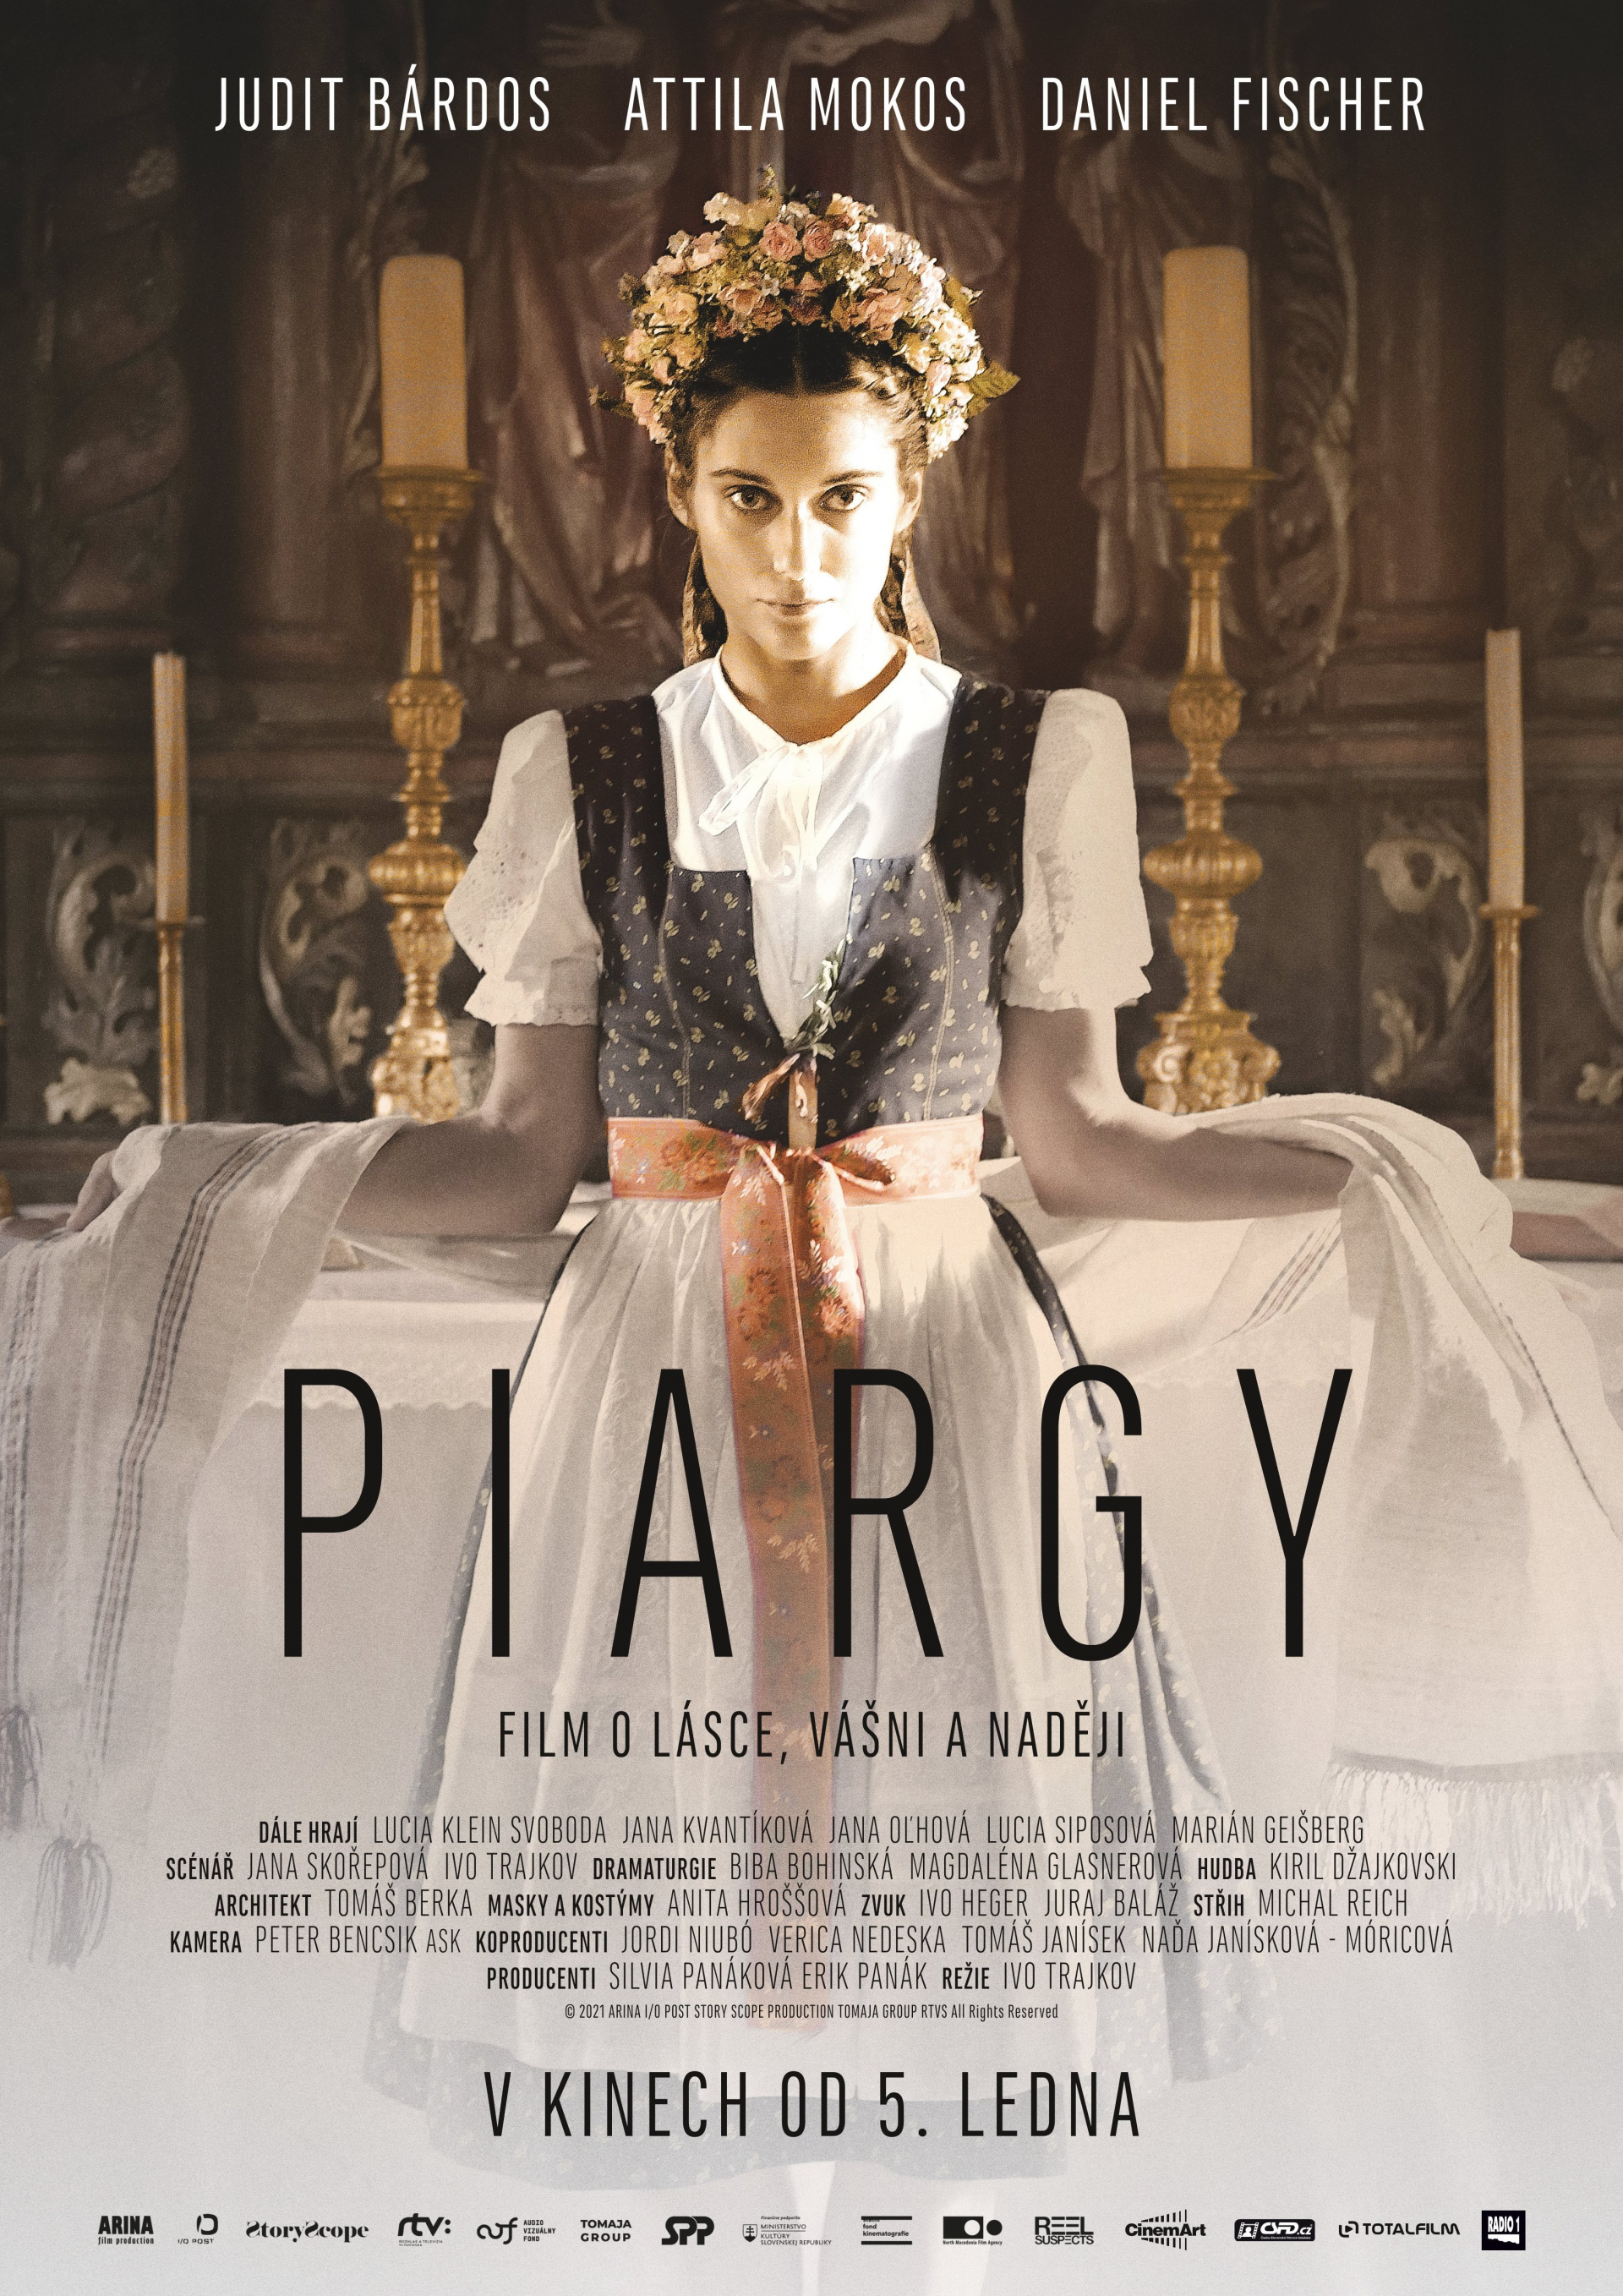 Plakát PIAGRY